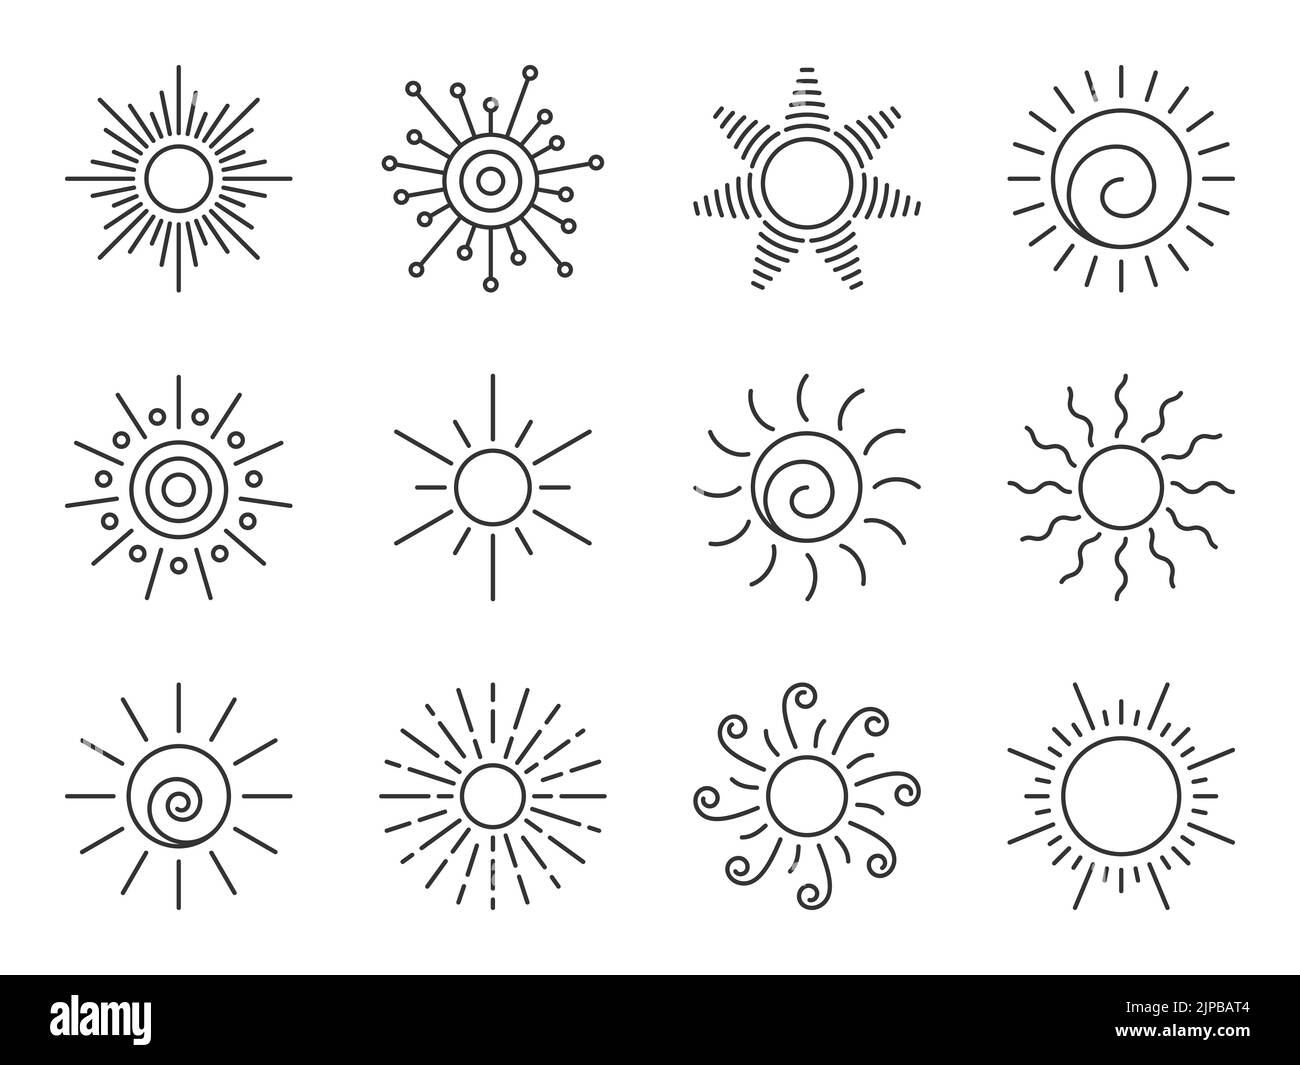 Symbol für die Sonnenlinie eingestellt. Verschiedene Form Sonnenstern. Cartoon Sommer Sonnenlicht Natur Himmel. Einfaches grafisches Sonnenkreiszeichen. Sonnige Hitze Strahlen Wetter App symb Stock Vektor